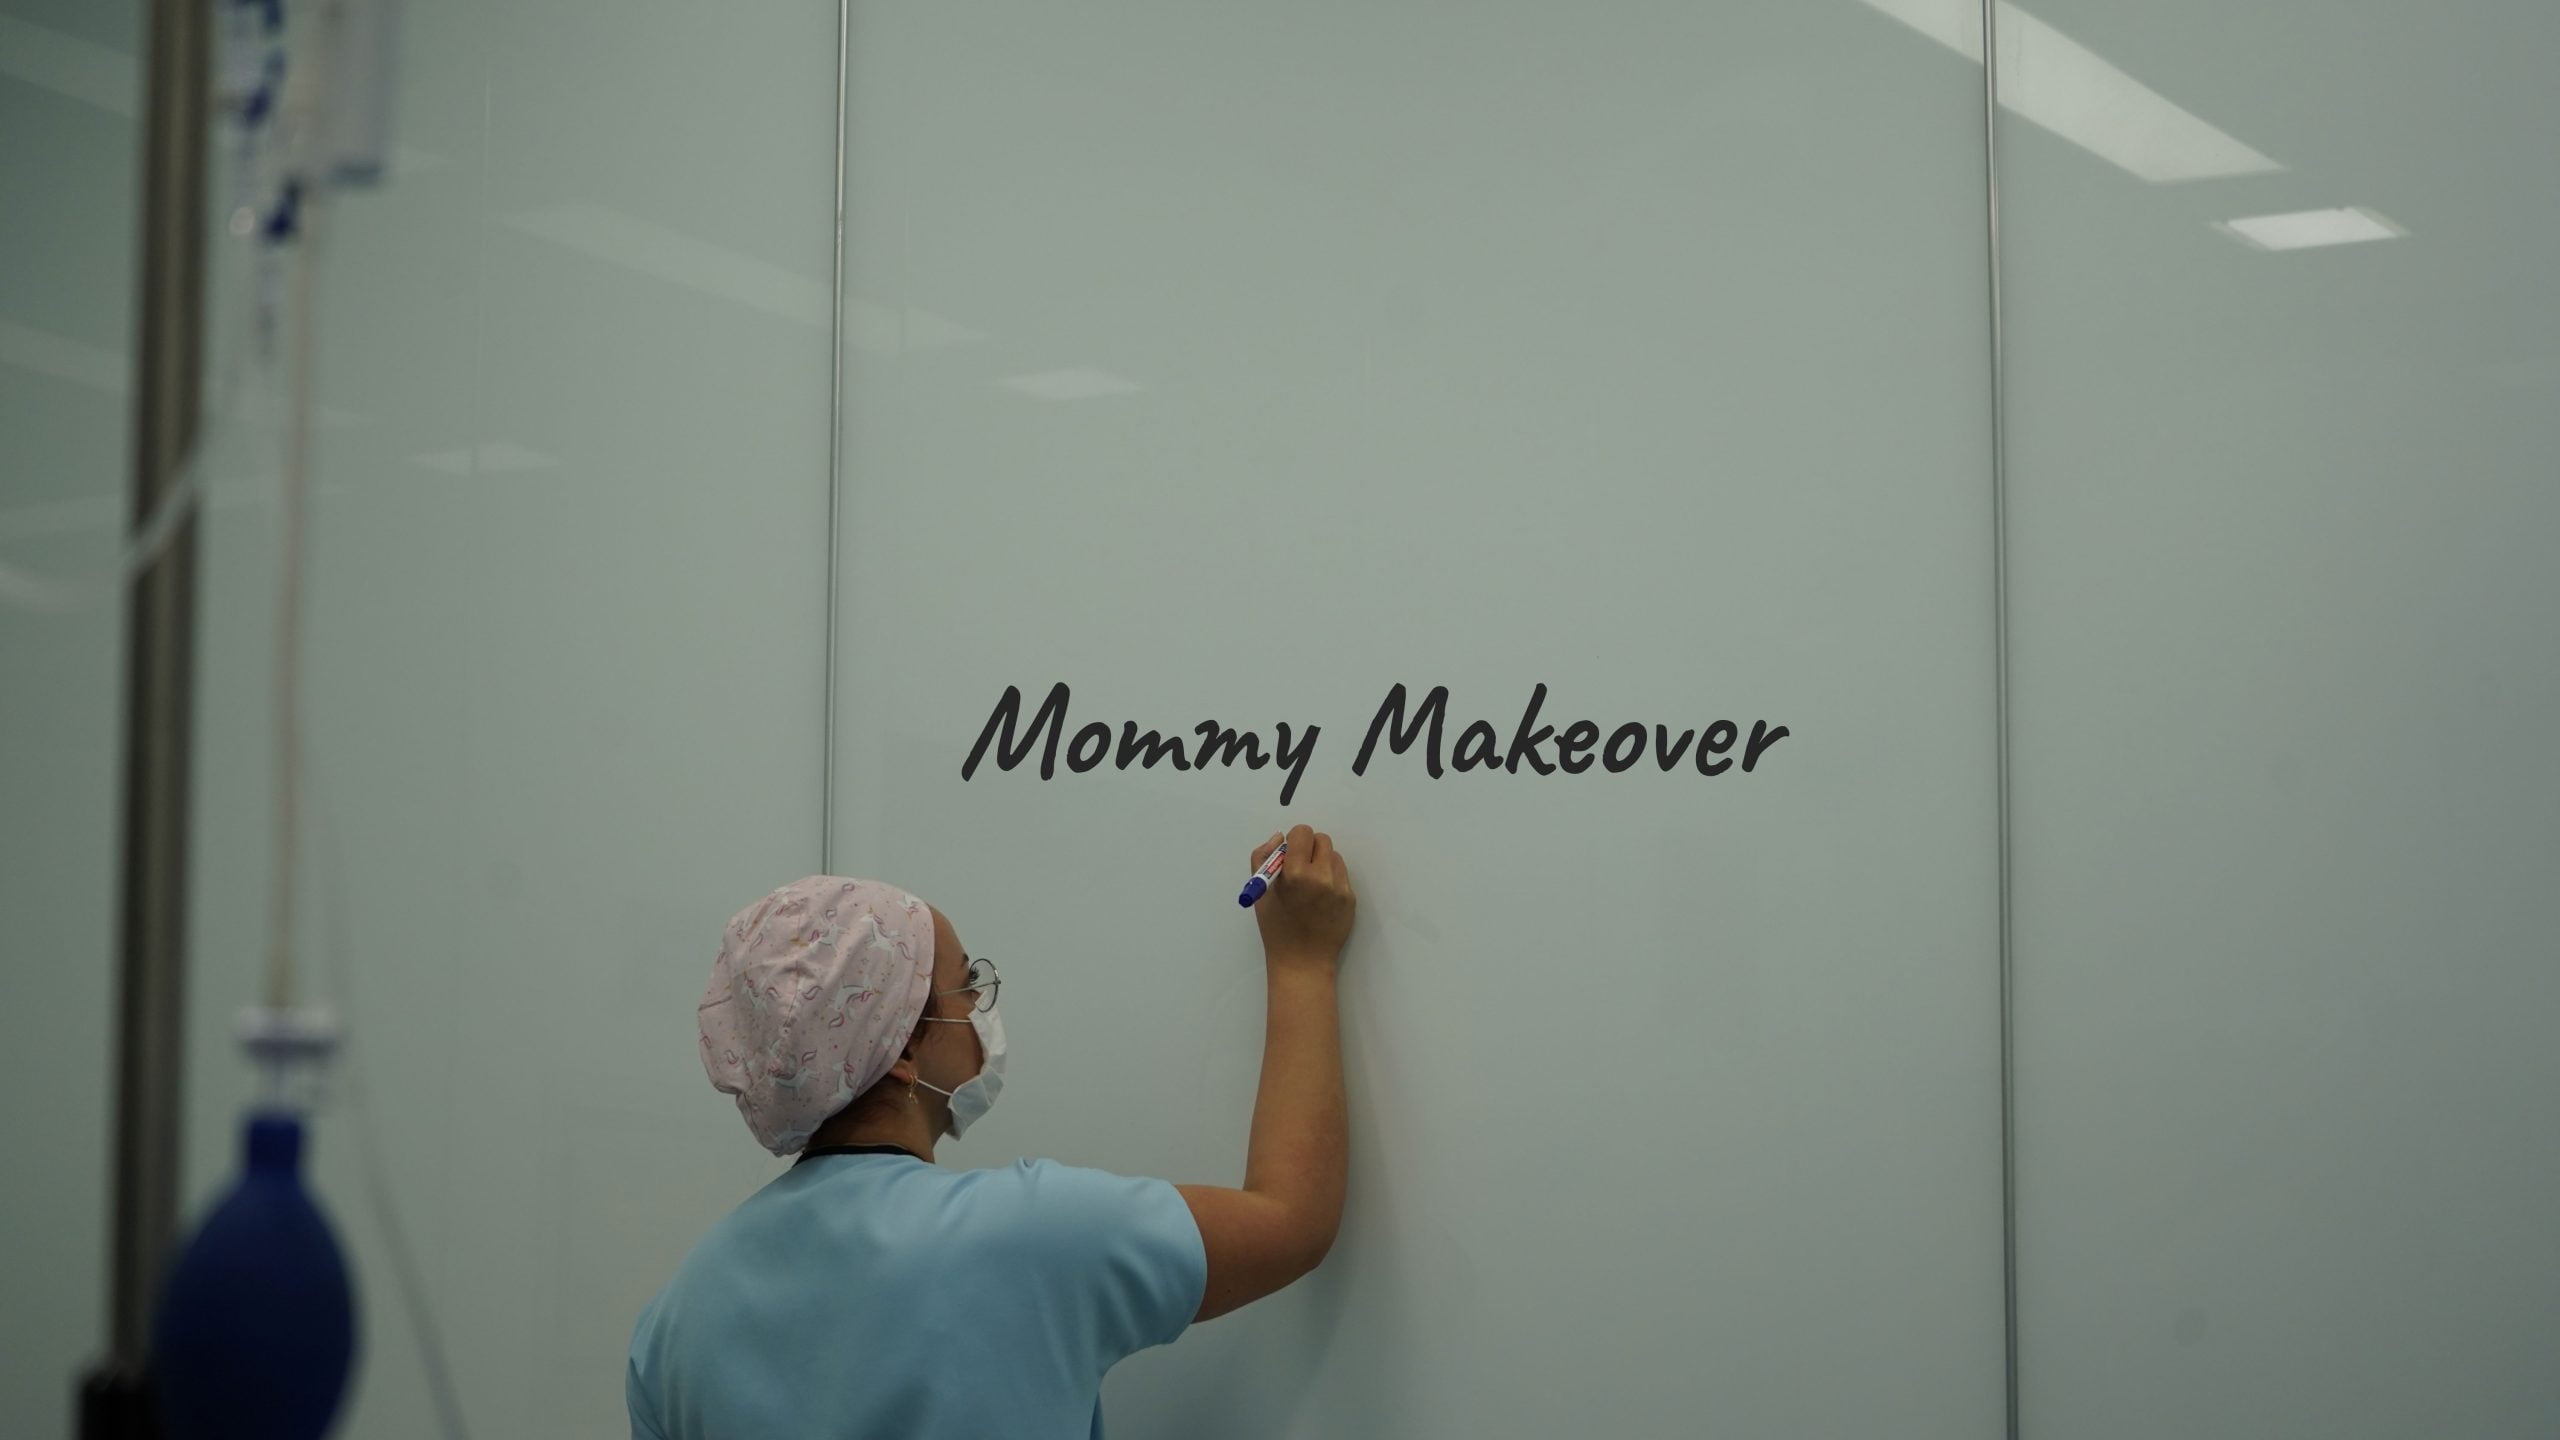 Mommy Makeover in der Türkei